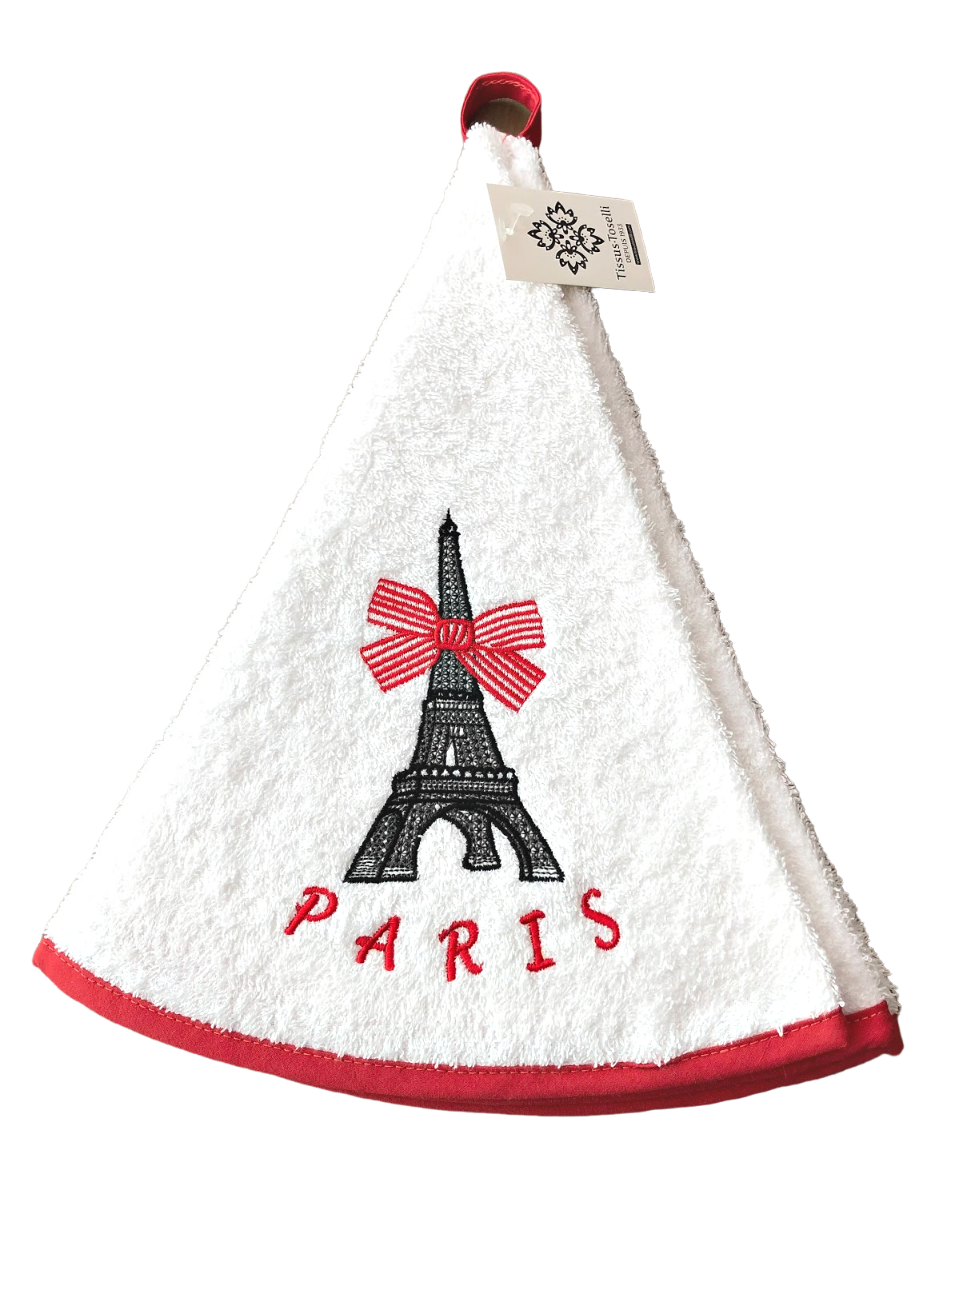 Froteekäsipyyhe Paris-tekstillä ja Eiffel-tornin kuvalla, punaiset reunukset ylellisessä valkoisessa puuvillafroteessa La Petite Provence